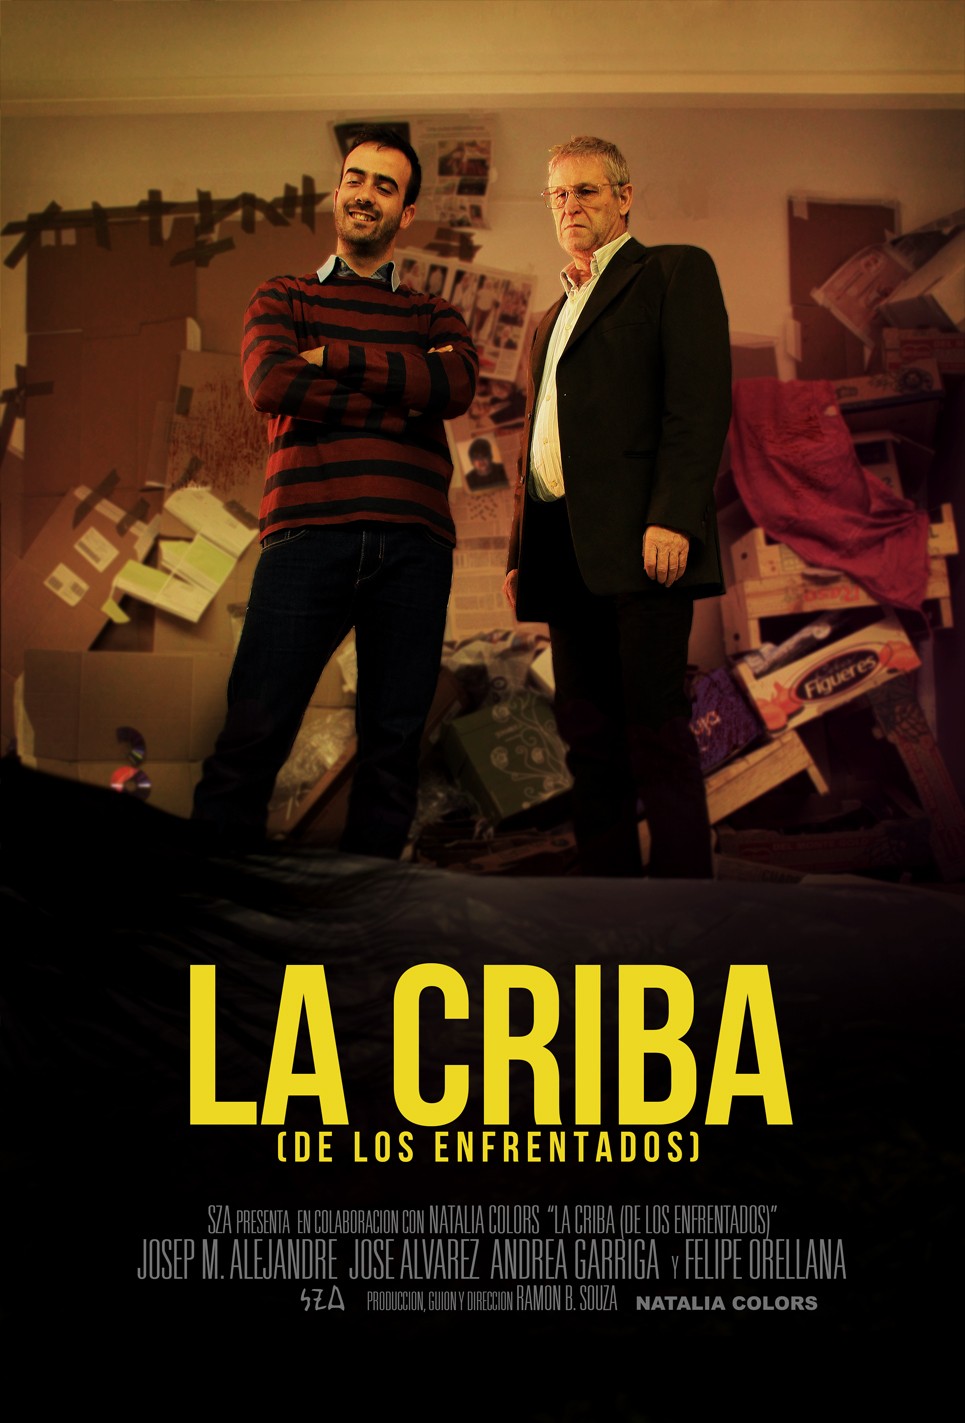 Extra Large Movie Poster Image for La Criba (de los enfrentados)